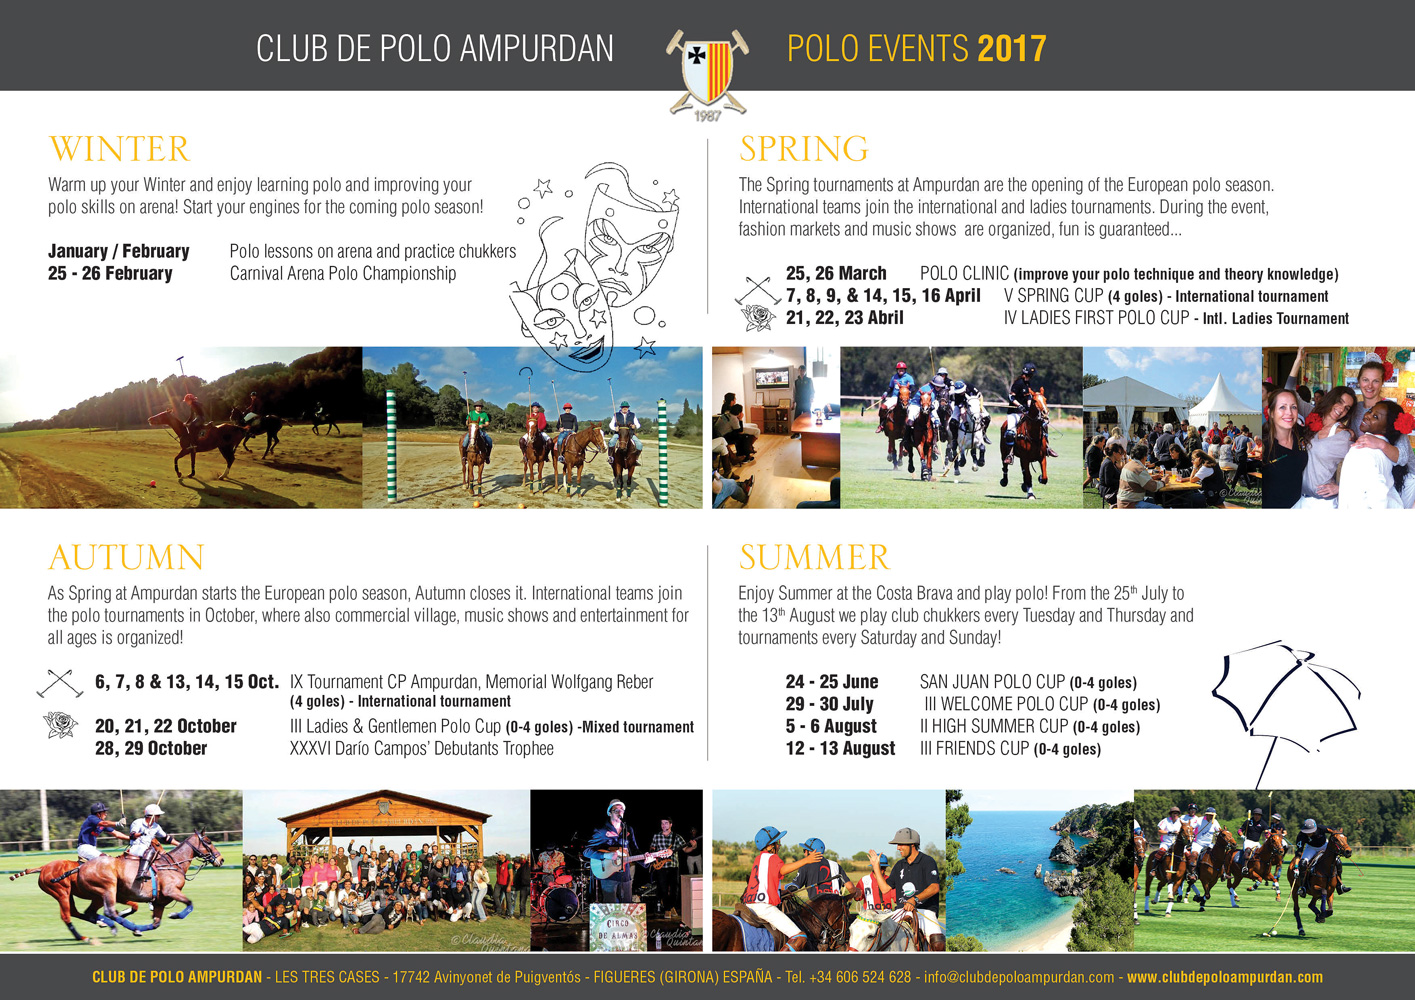 Club de Polo Ampurdan - Spain